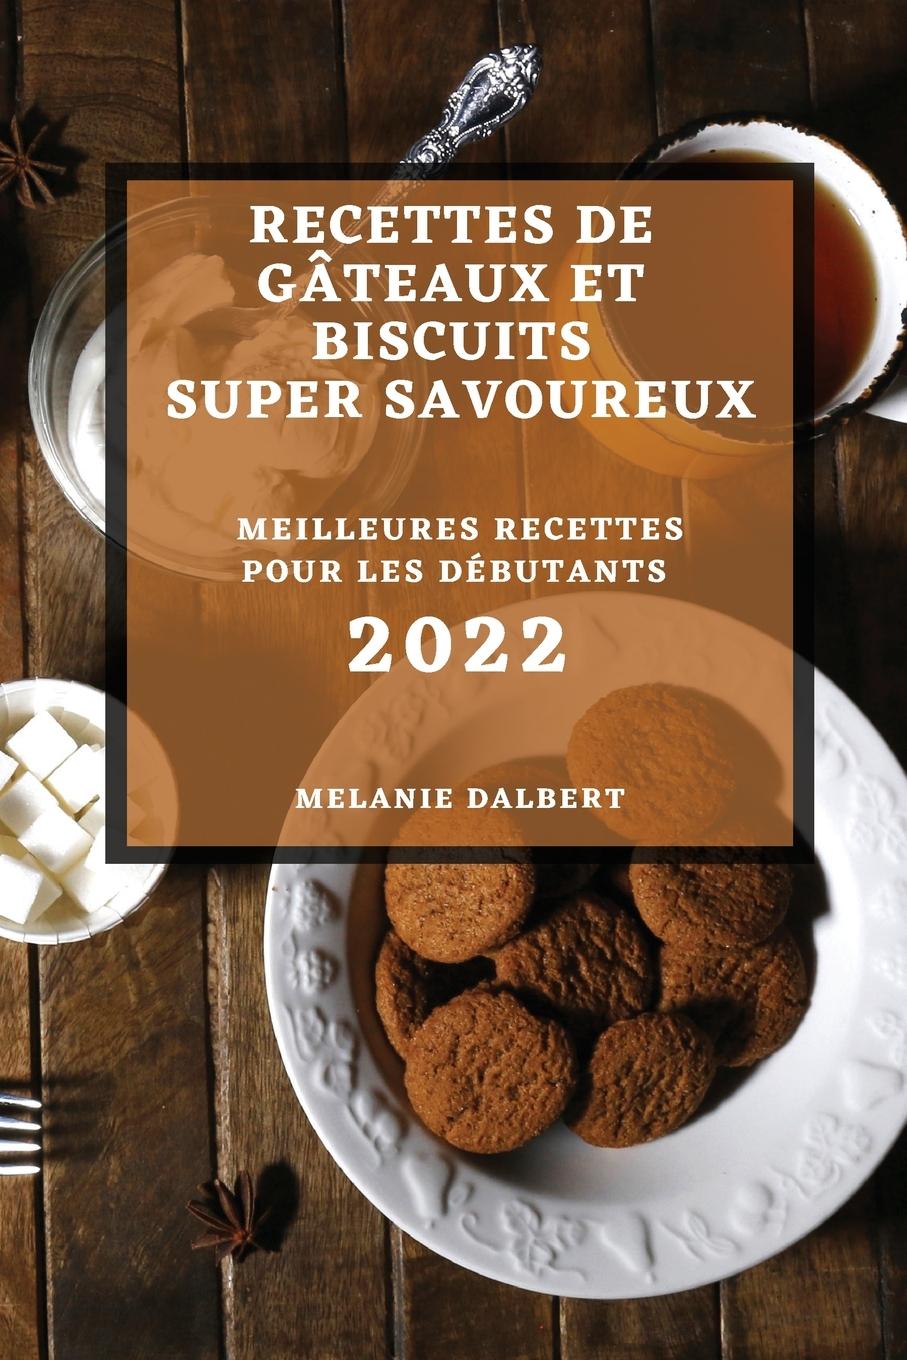 Knjiga Recettes de Gateaux Et Biscuits Super Savoureux 2022 